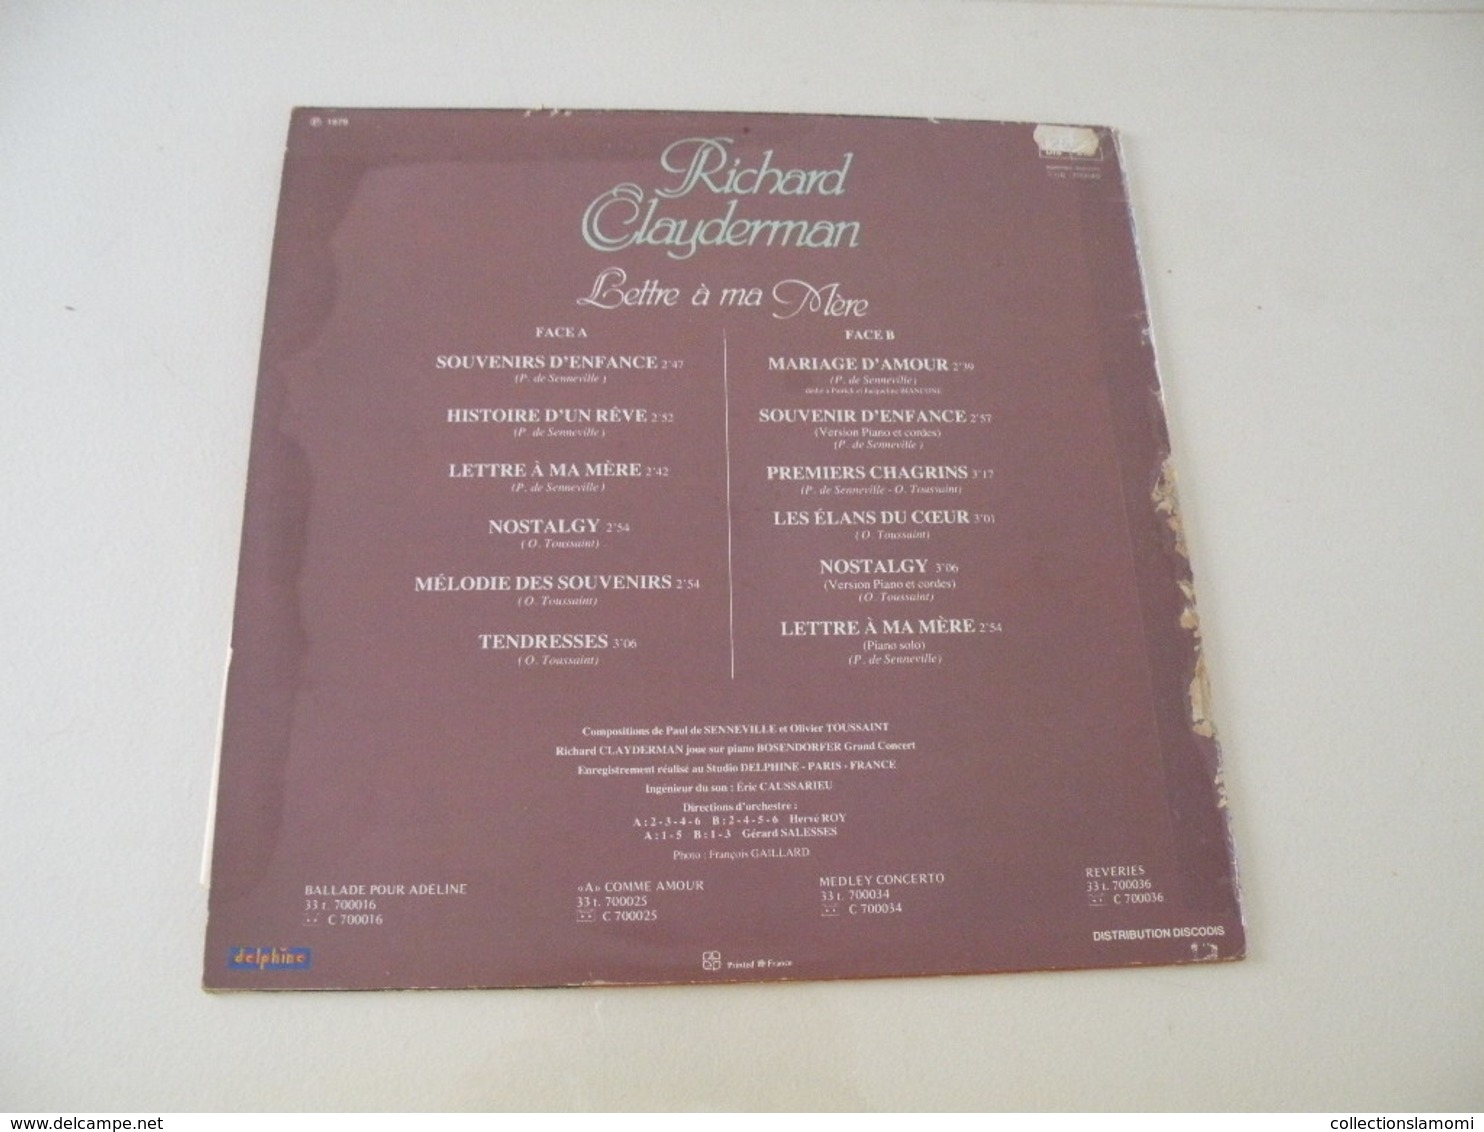 Richard Clayderman 1979 - (Titres Sur Photos) - Vinyle 33 T LP - Musicals